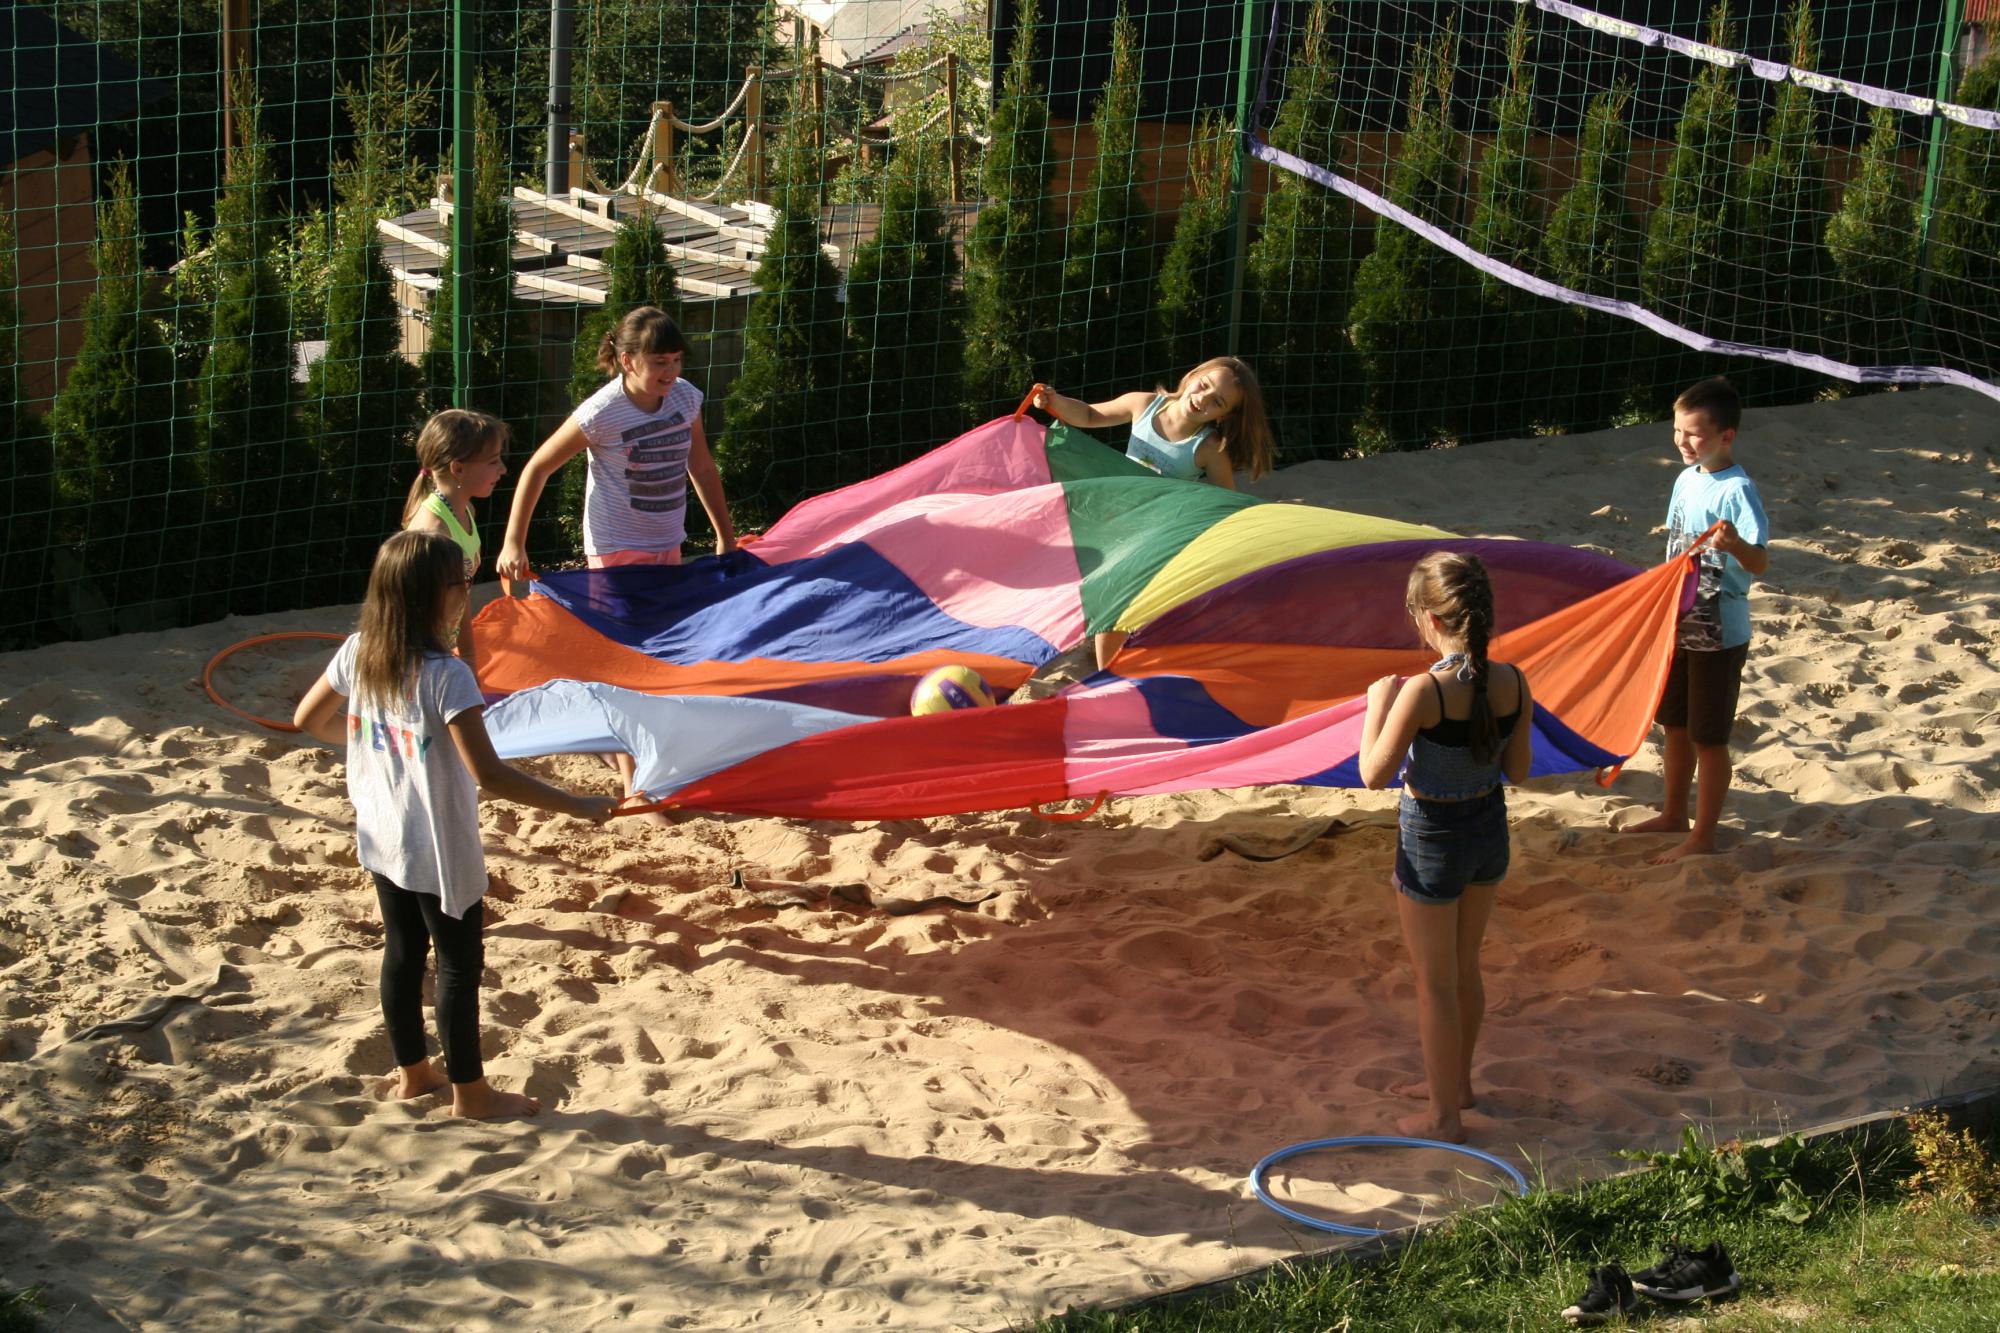 Plac zabaw dla dzieci - noclegi w Koniakowie